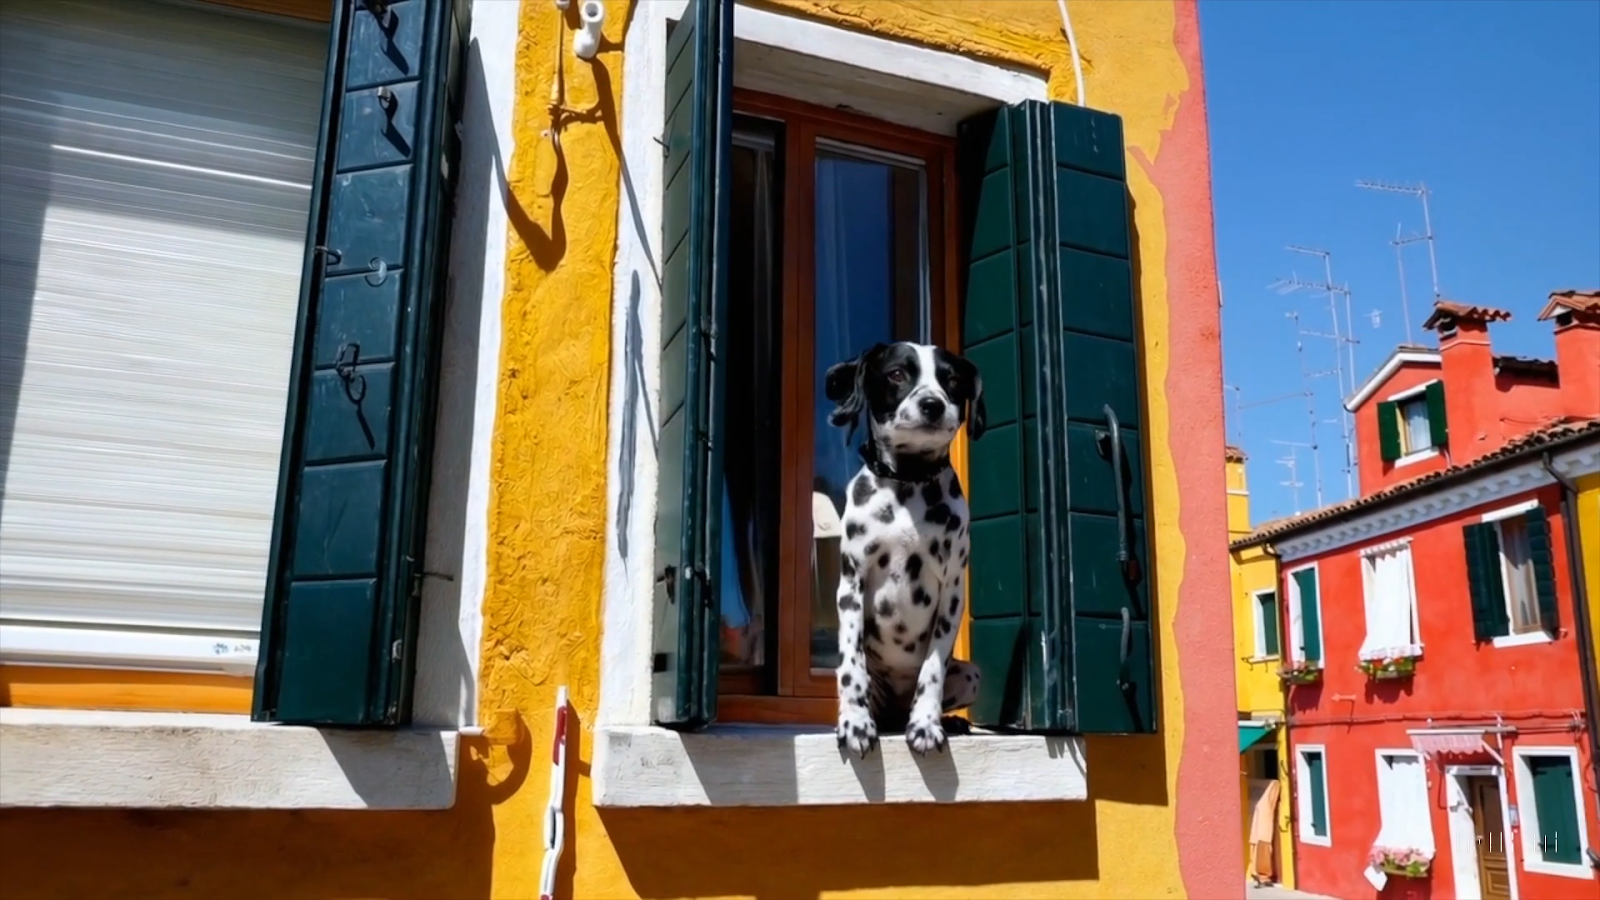 Un cane seduto in una finestraDescrizione generata automaticamente